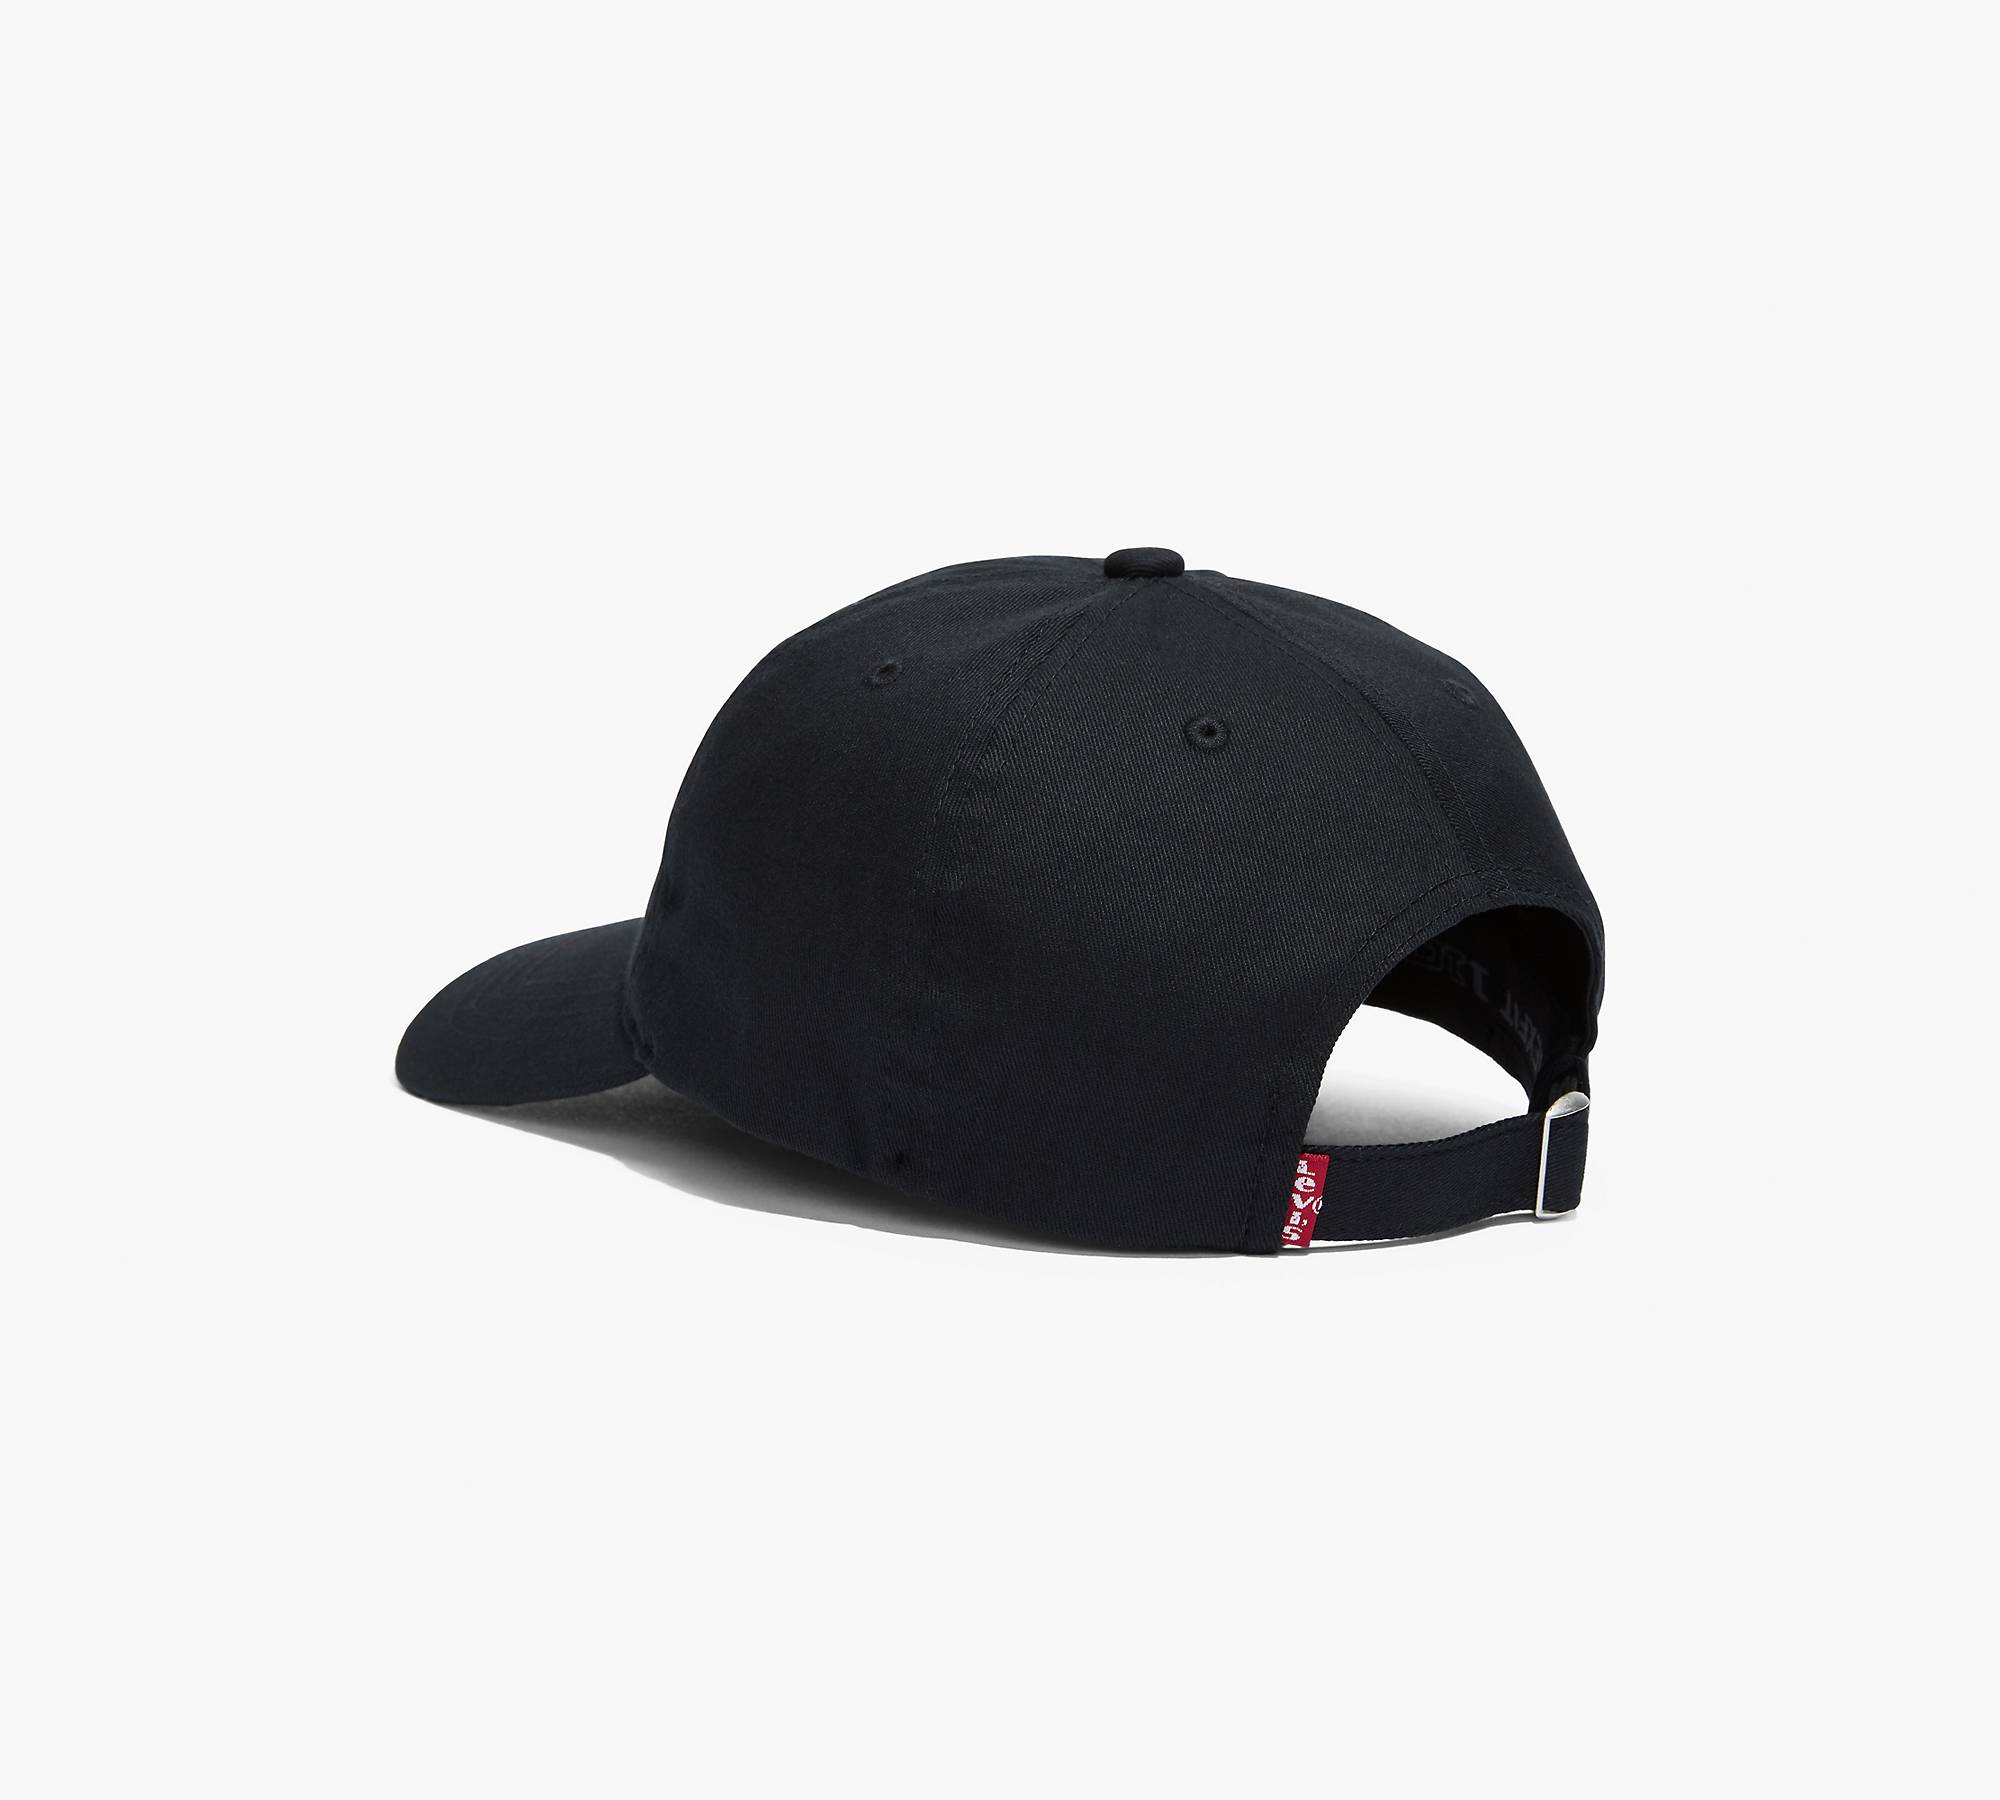 Levi's® Logo Flex Fit Hat - Black | Levi's® US